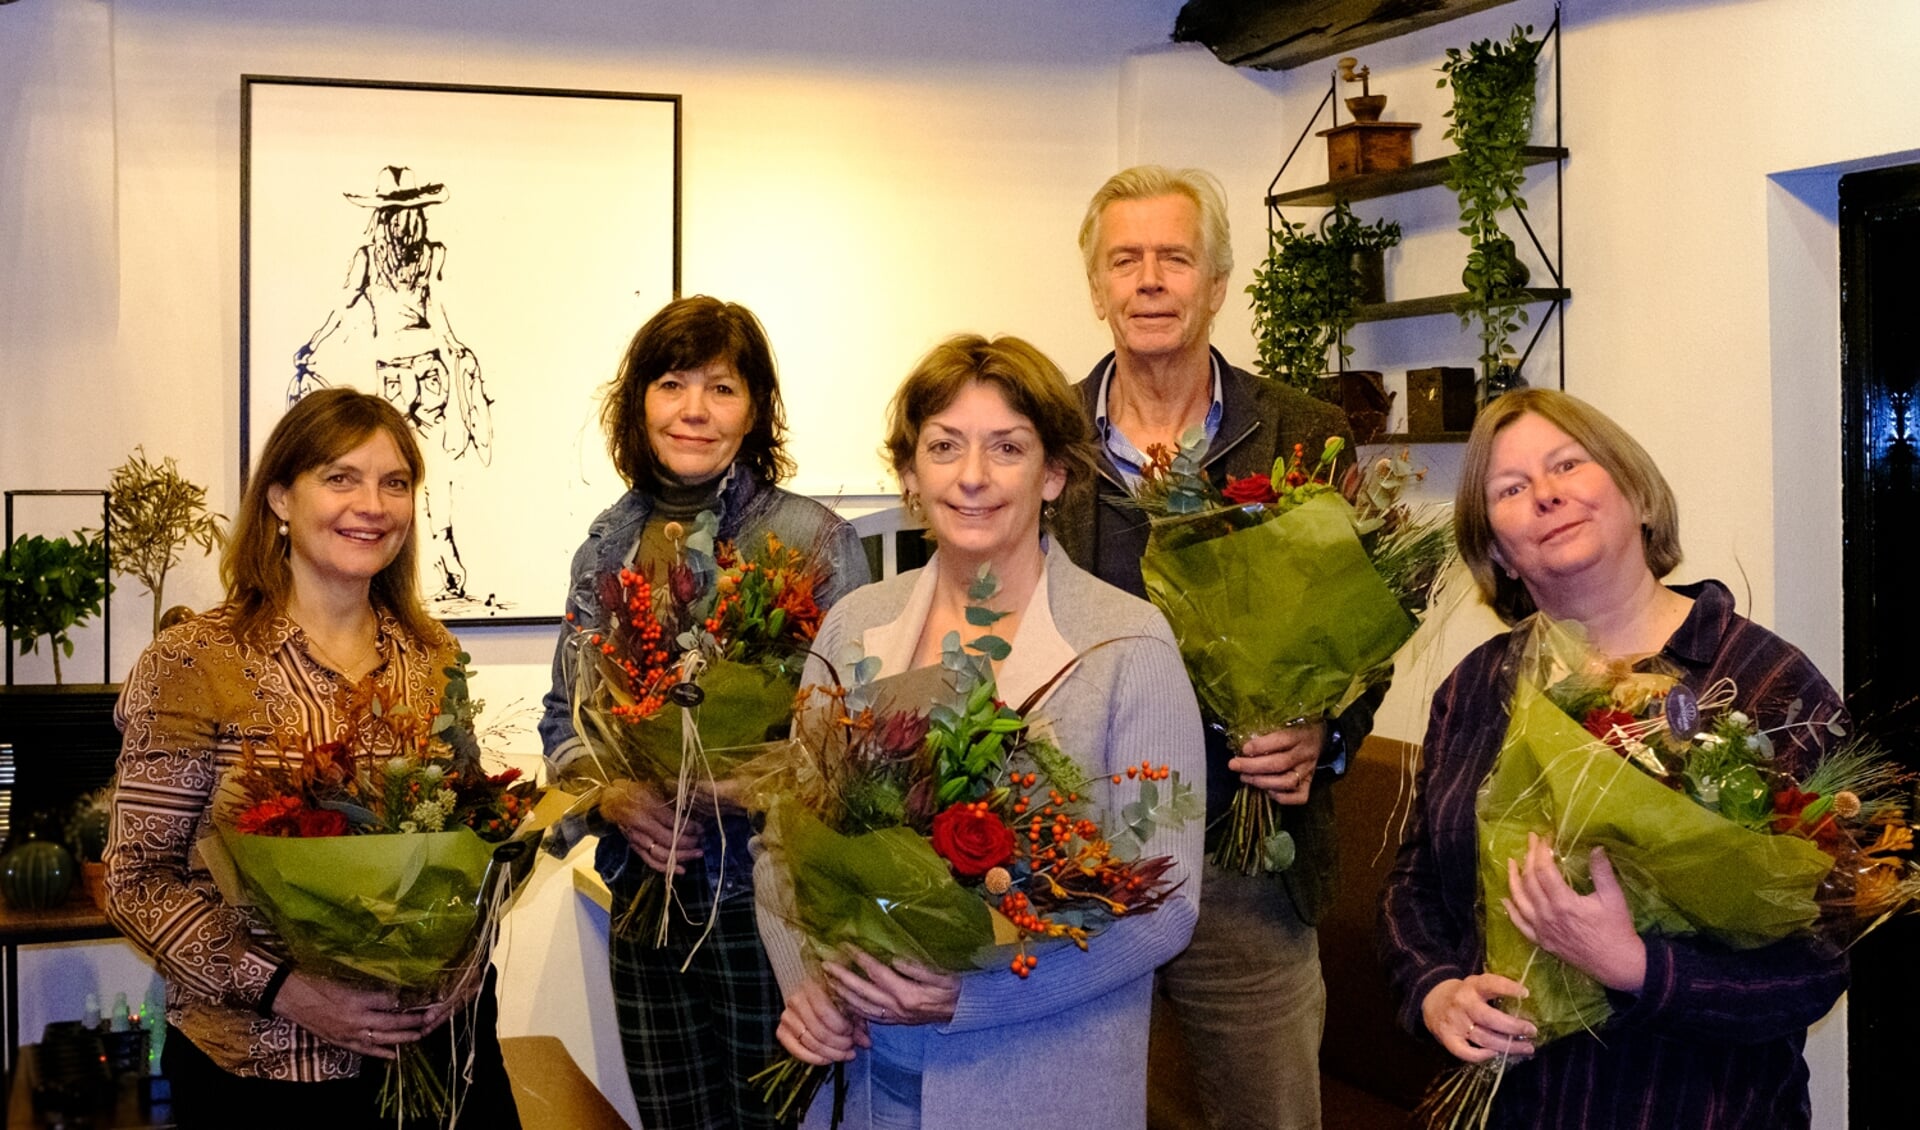 • De top-5 van GroenLinks, v.l.n.r. Renske de Zwart (3), Lydi Groenewegen (4), Andrea Zierleyn (lijsttrekker), Jur van der Lecq (2) en Francoise Groenendaal-Vlug (5).
 
